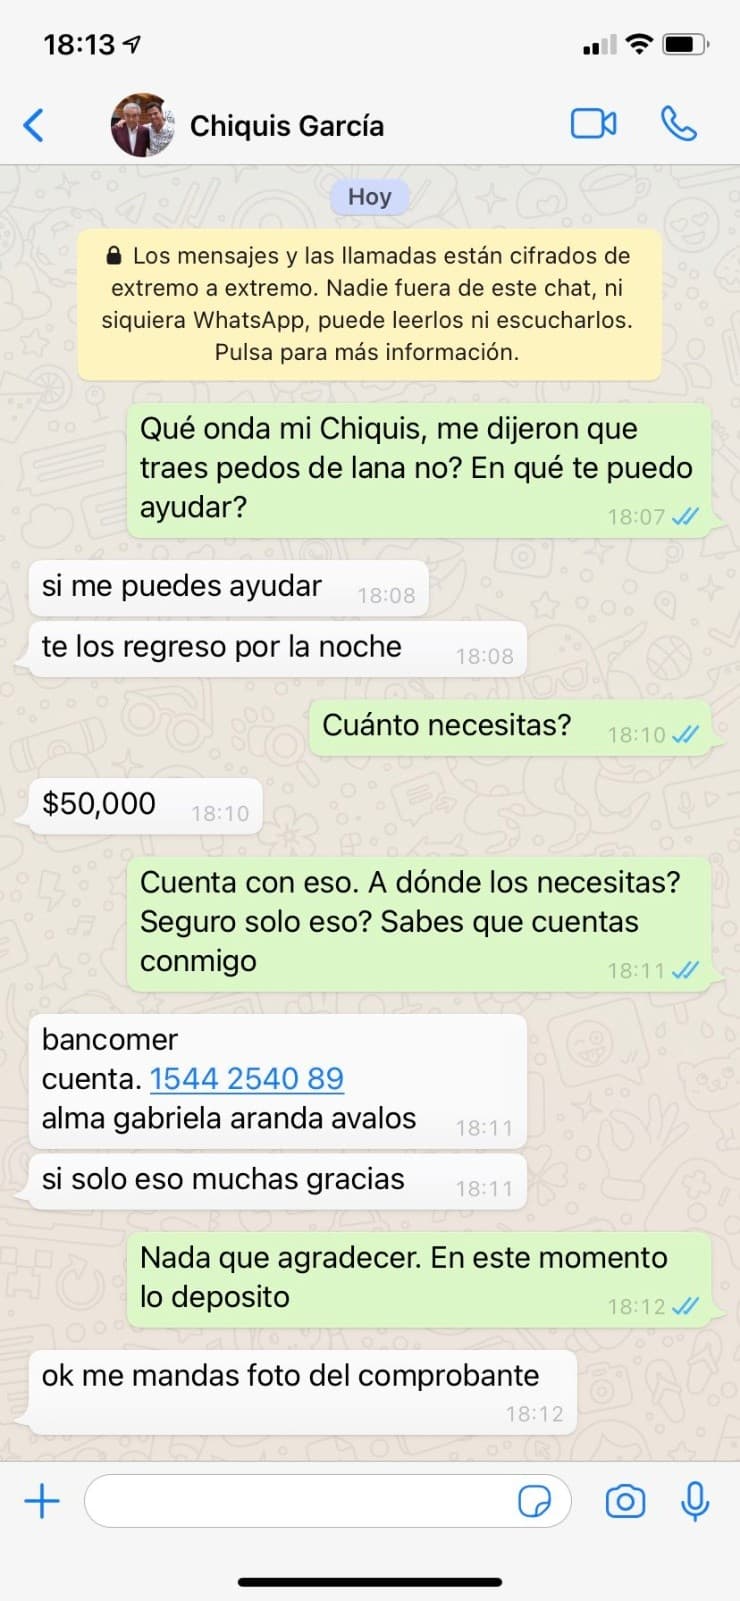 Teléfono del Chiquis García es intervenido y usado para un fraude; un hacker pide 50,000 pesos a sus contactos